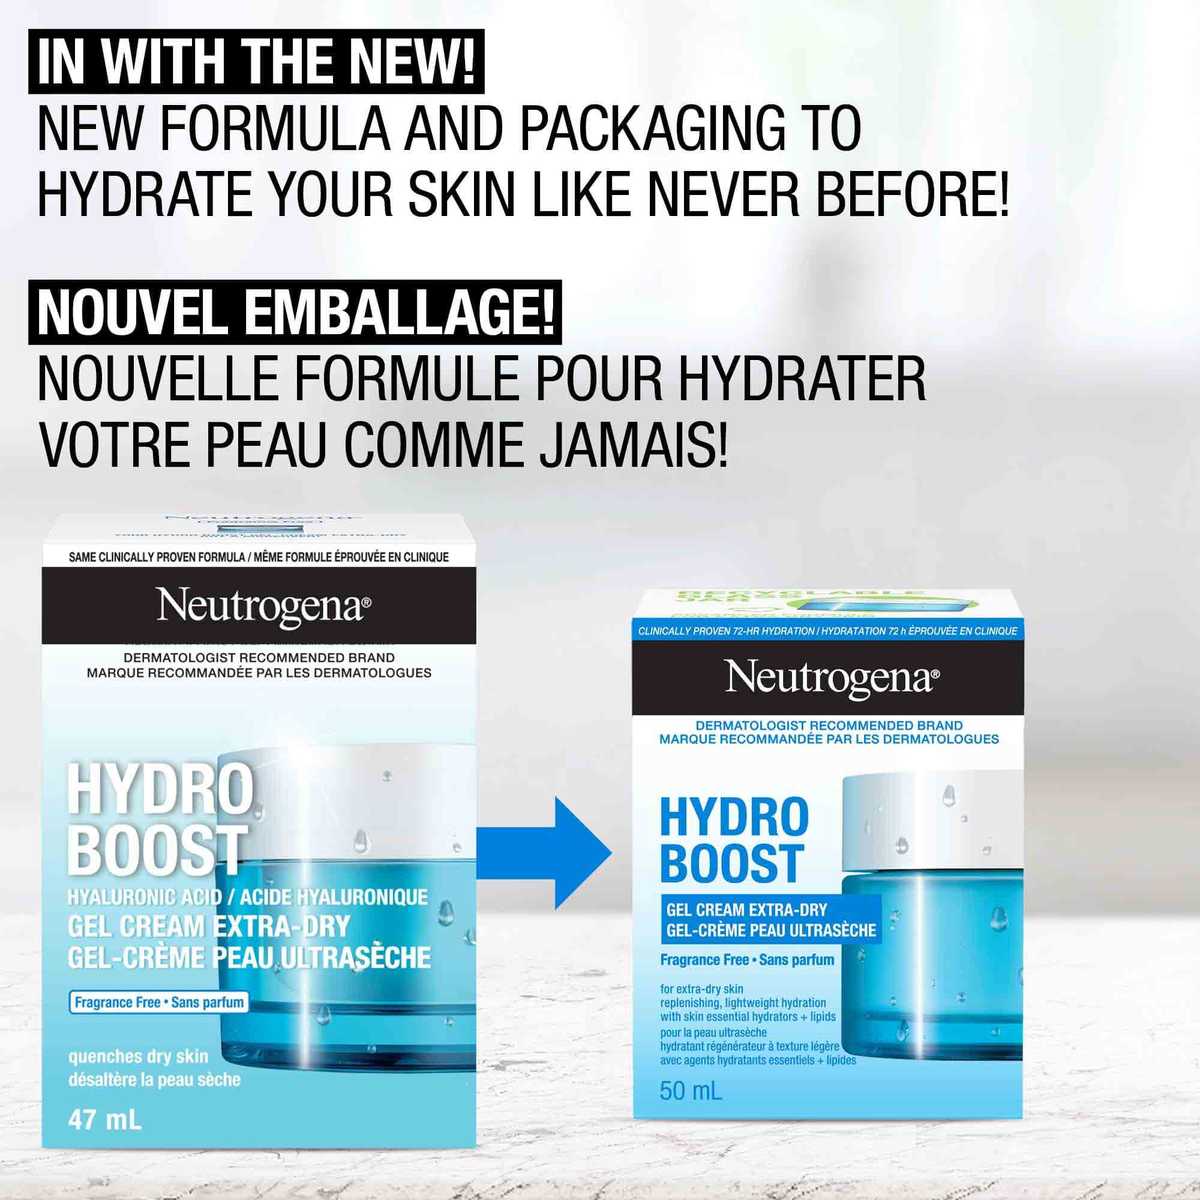 Ancien et nouvel emballage du gel-crème peau ultrasèche NEUTROGENA® Hydro Boost, avec les mentions « Nouvel emballage » et « Nouvelle formule pour hydrater votre peau comme jamais! ».